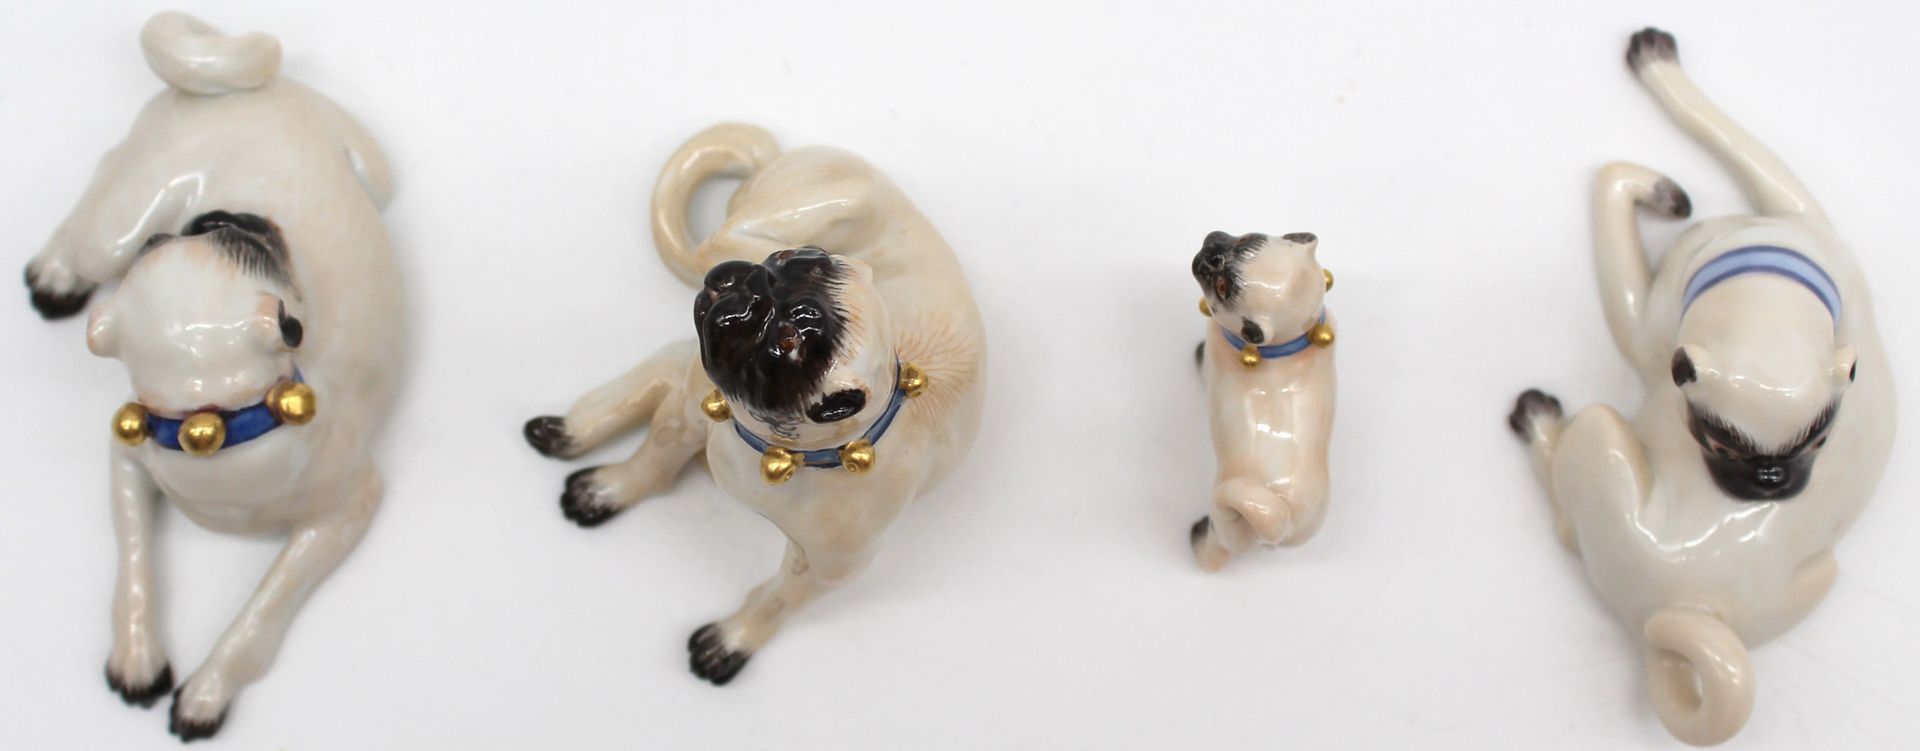 Meissen porcelain. 4 figures, pug. Up to 6 cm high. - Image 8 of 11